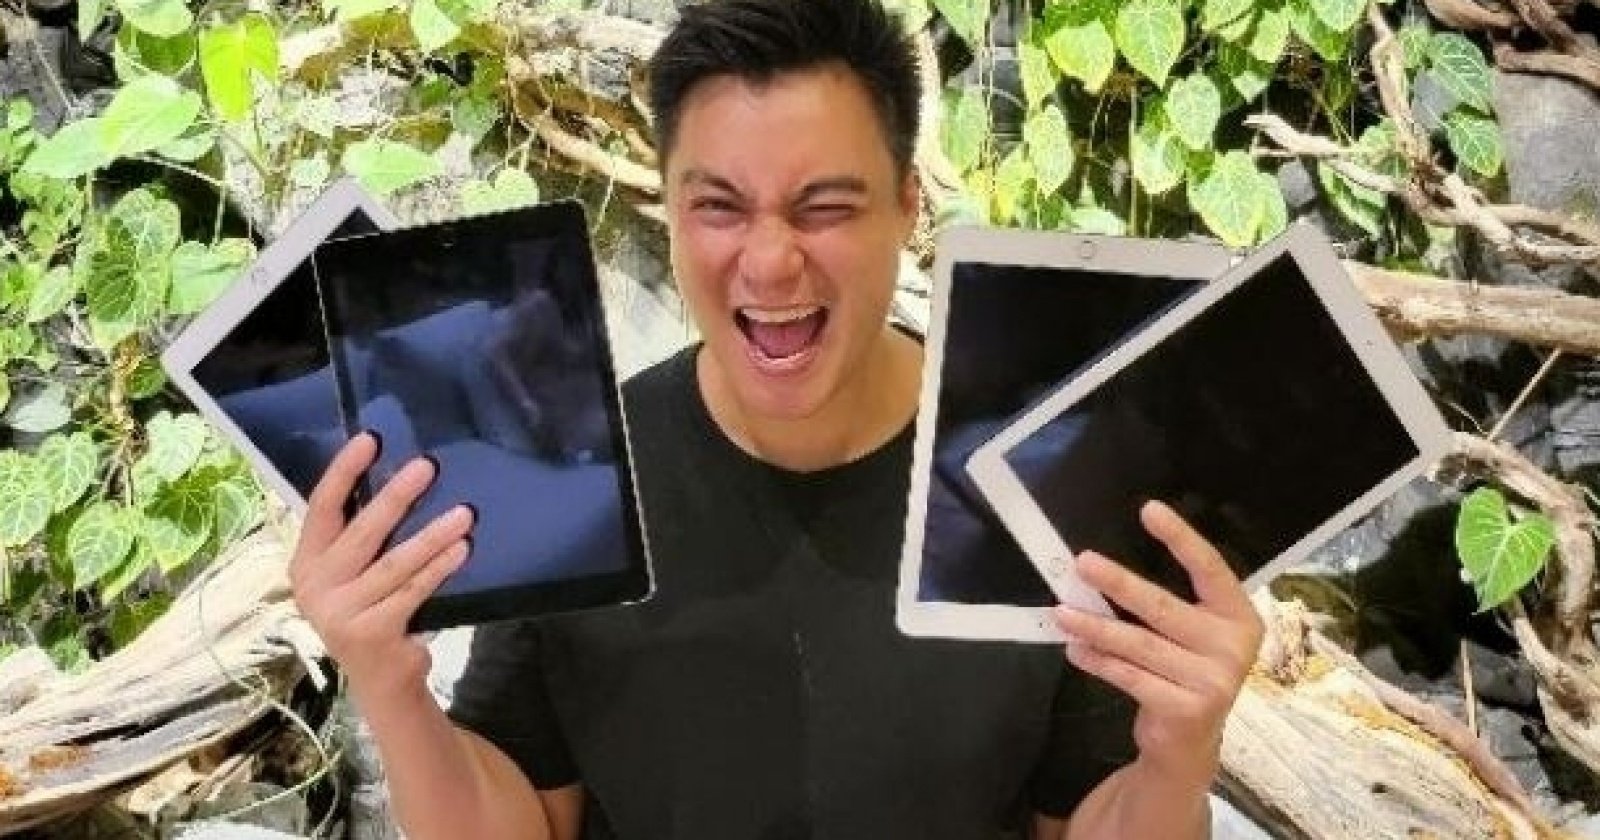  Baim Wong Gerah! Niat Bantu Jual iPad Murah Malah Kena Tuduhan Tak Mengenakkan 